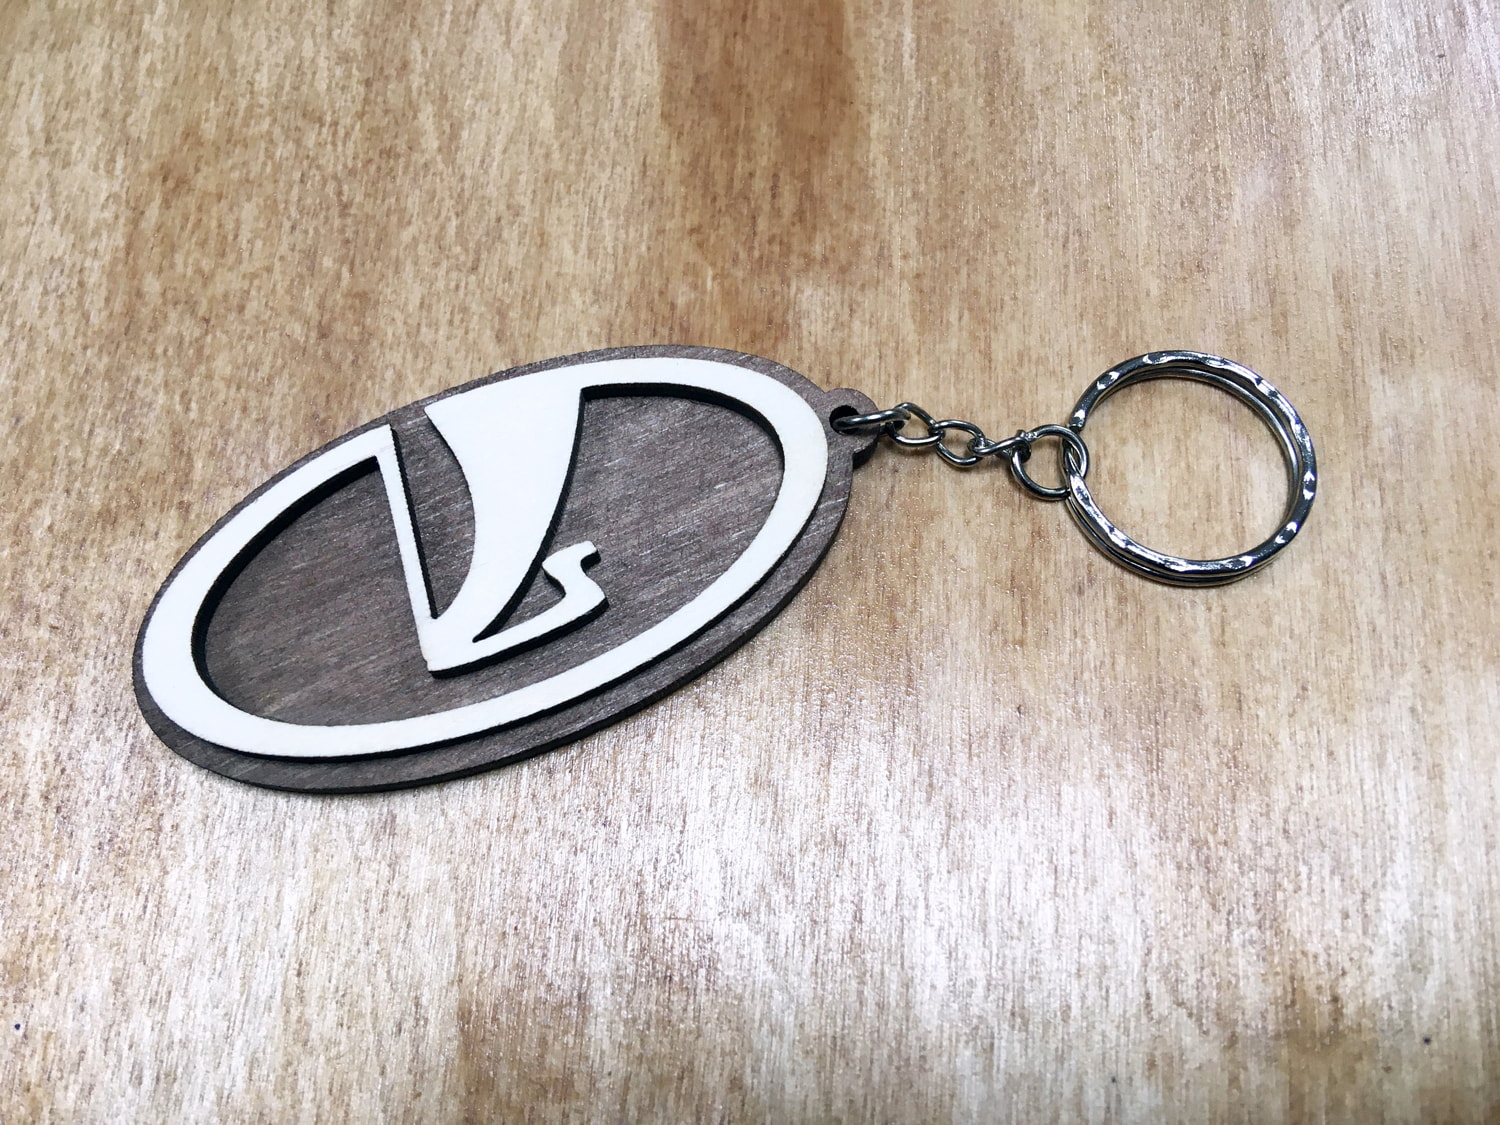 Porte-clés Lada découpé au laser avec logo de voiture